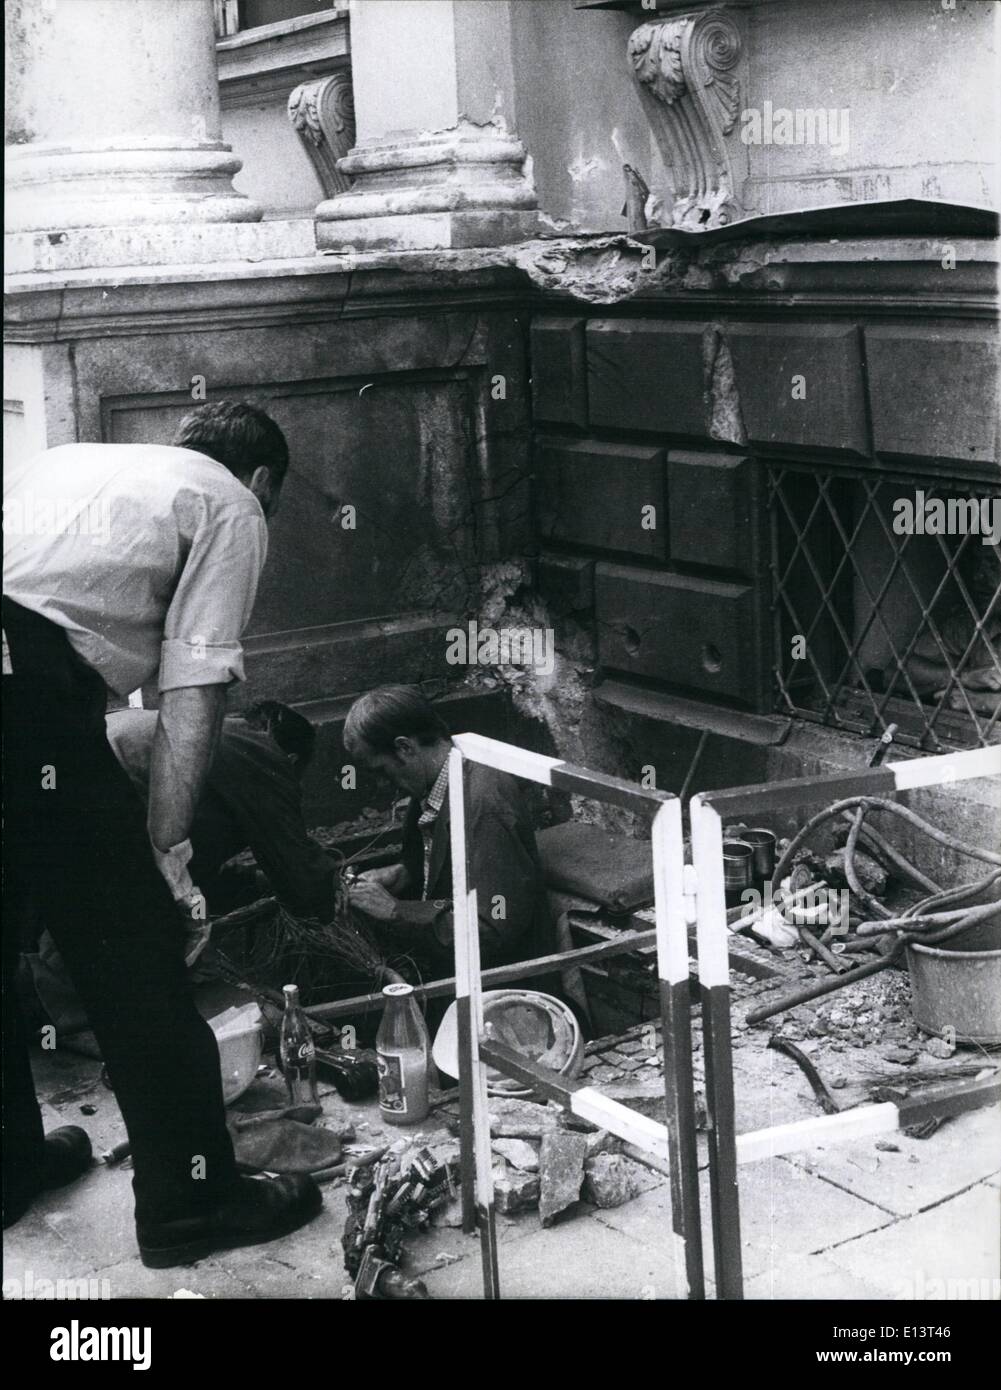 27 mars 2012 - tentative de bombe Le Ministère bavarois de l'Intérieur à Munich : Dans la nuit du vendredi 9 juillet 1976, une bombe a eu tentative à le ministère bavarois de l'intérieur dans le centre de Munich. L'explosion de la bombe, qui avait été mis en face de l'immeuble, a causé des dommages à l'immeuble lui-même, il y a un parking pour les voitures et les fenêtres de bâtiments autour, au total, environ 50.000 DM. jusqu'à présent, la police n'a pas trouvé de signes de des personnes autorisées, qui sont cependant d'être membres de groupes anarchistes. Photo montre l'endroit de la recherche Détectives de l'explosion. Banque D'Images